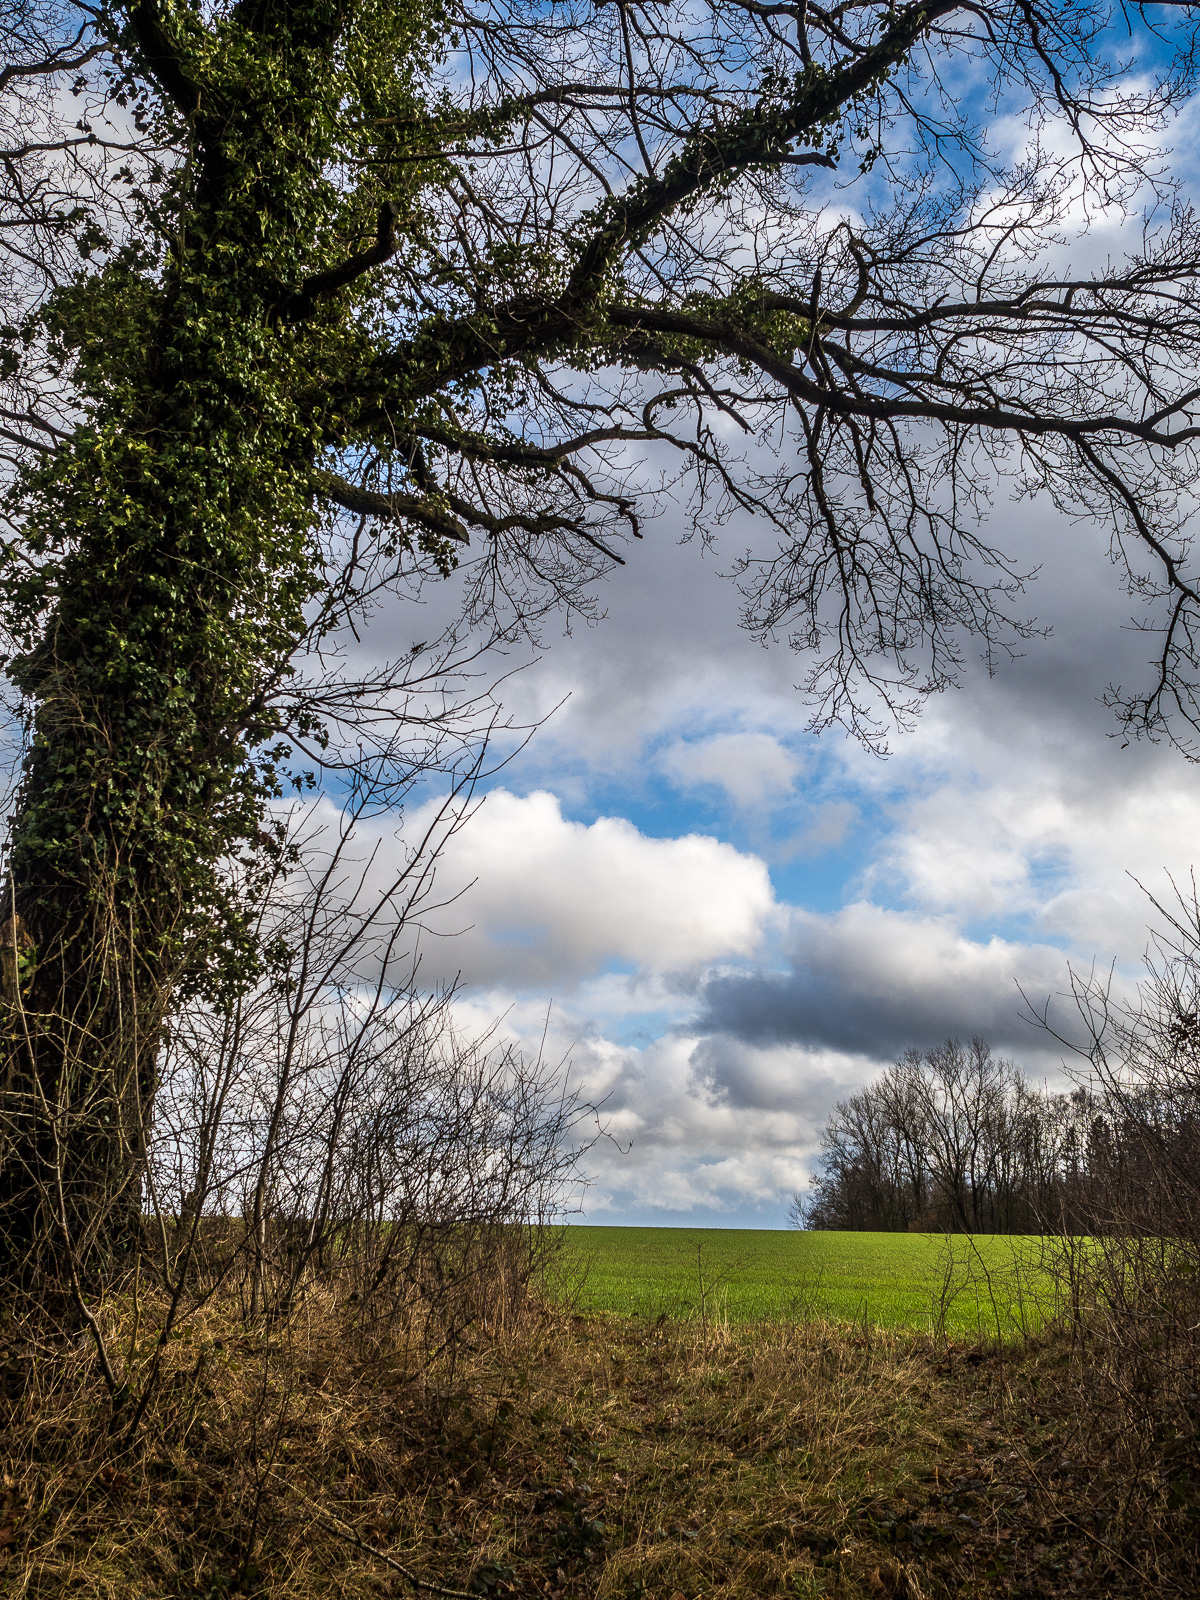 Links im Bild ein markanter hoher Baum im Ausschnitt, an dem Efeu dicht hochrankt. Daneben eine Wiese und viel Himmel mit Häufchenwolken.